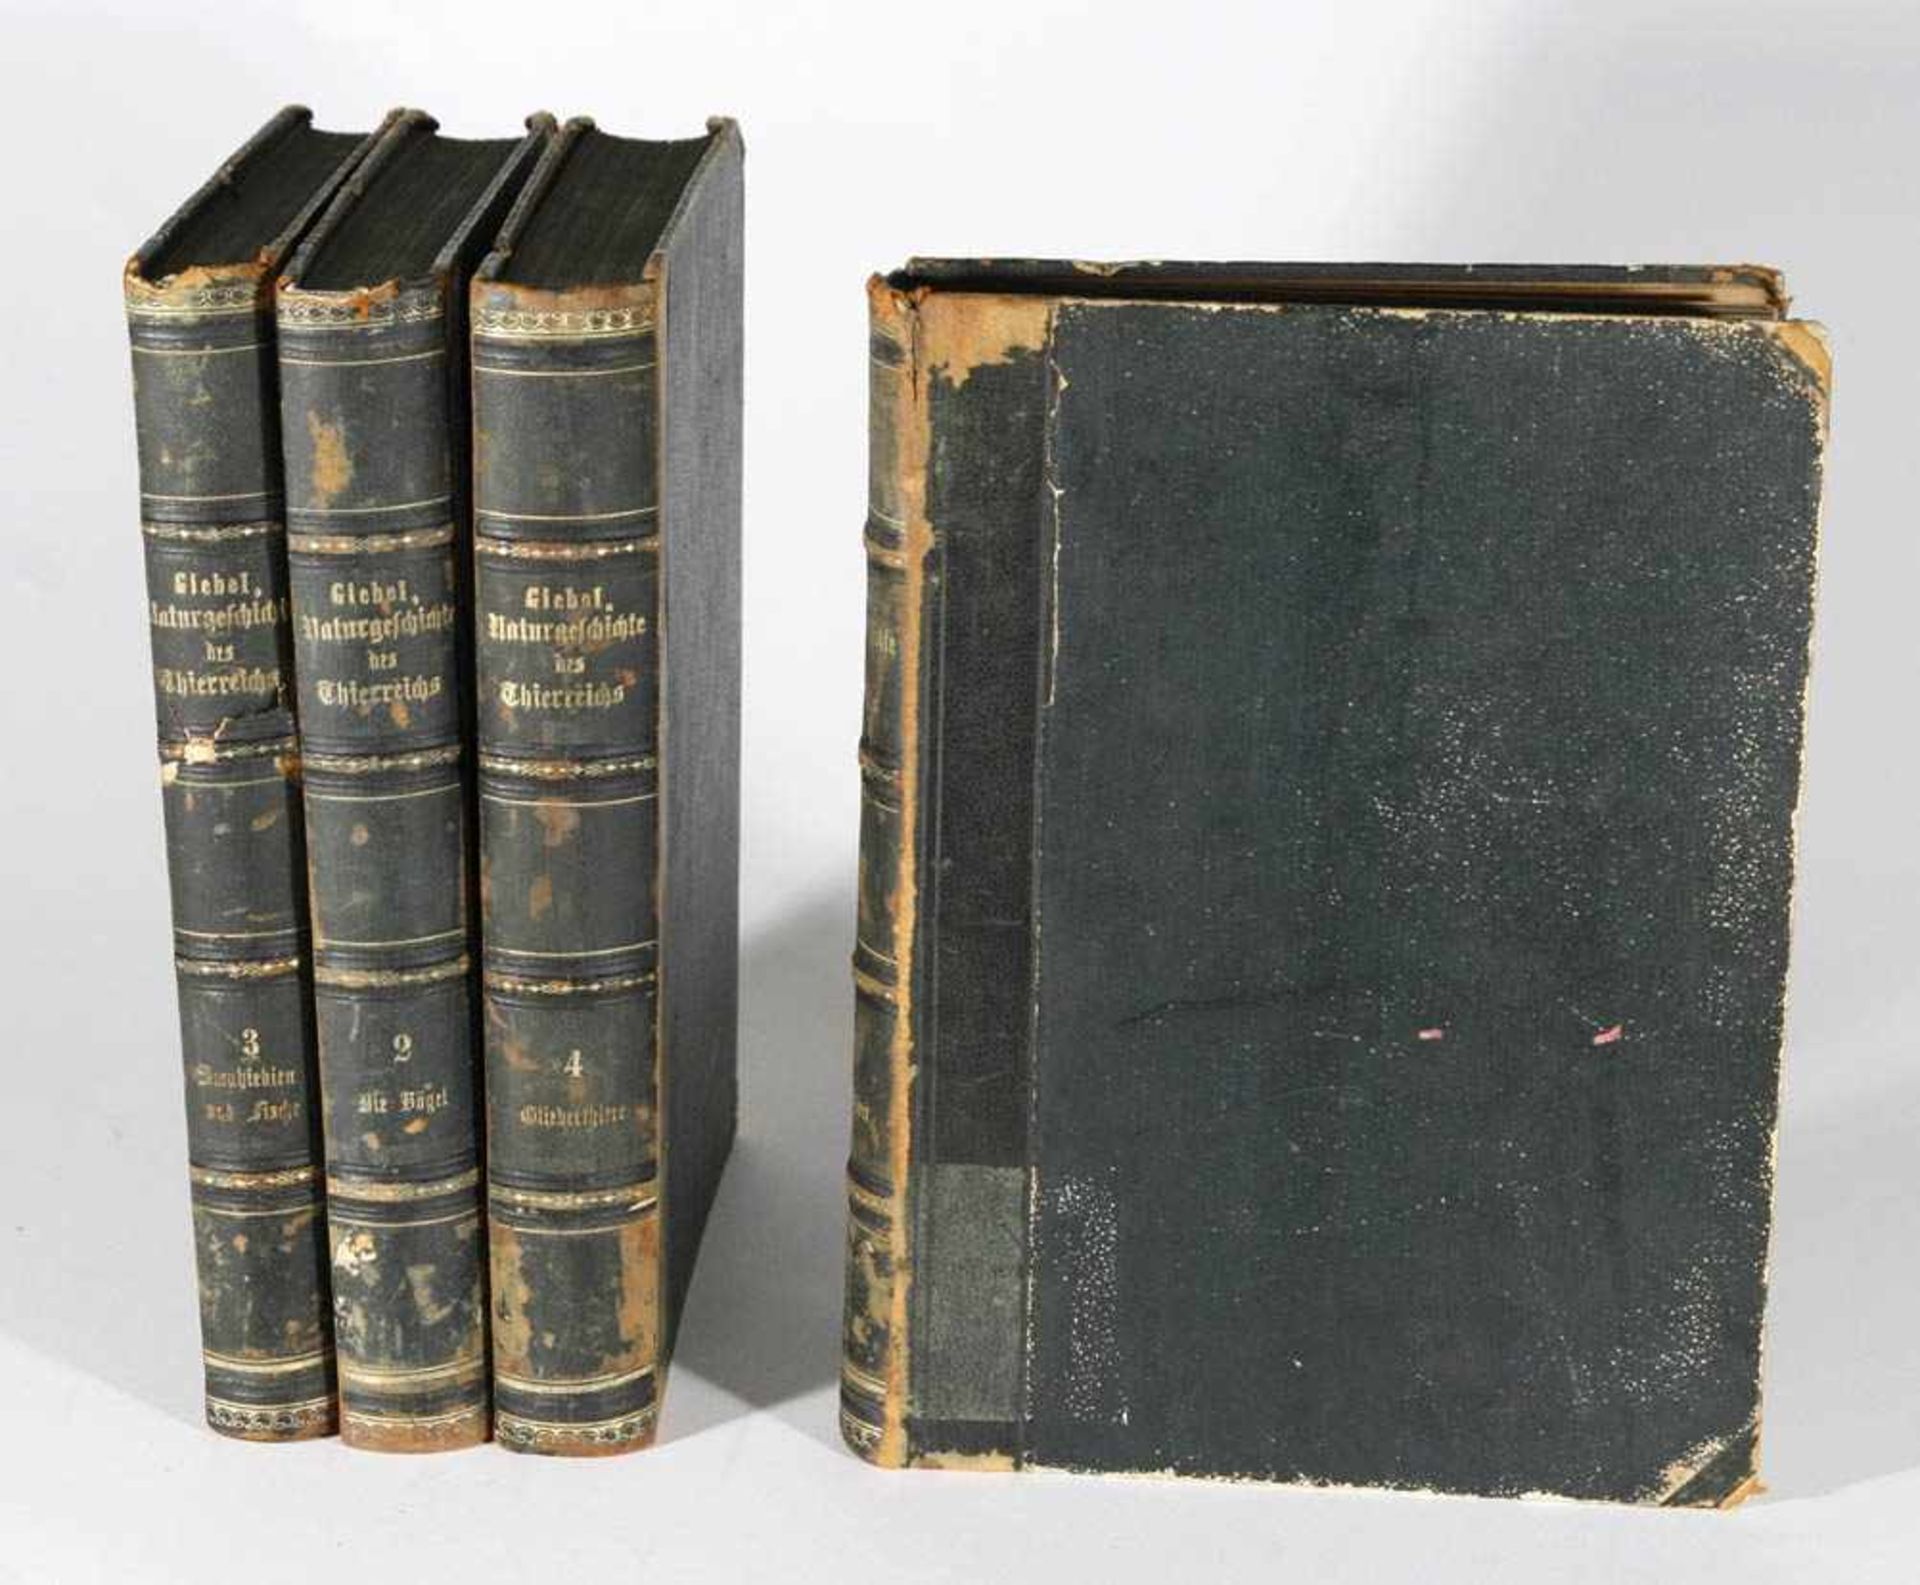 Giebel, C.G.Die Naturgeschichte des Thierreichs, 4 Bde., Wigand, Leipzig, 1859. Mit zahlreichen